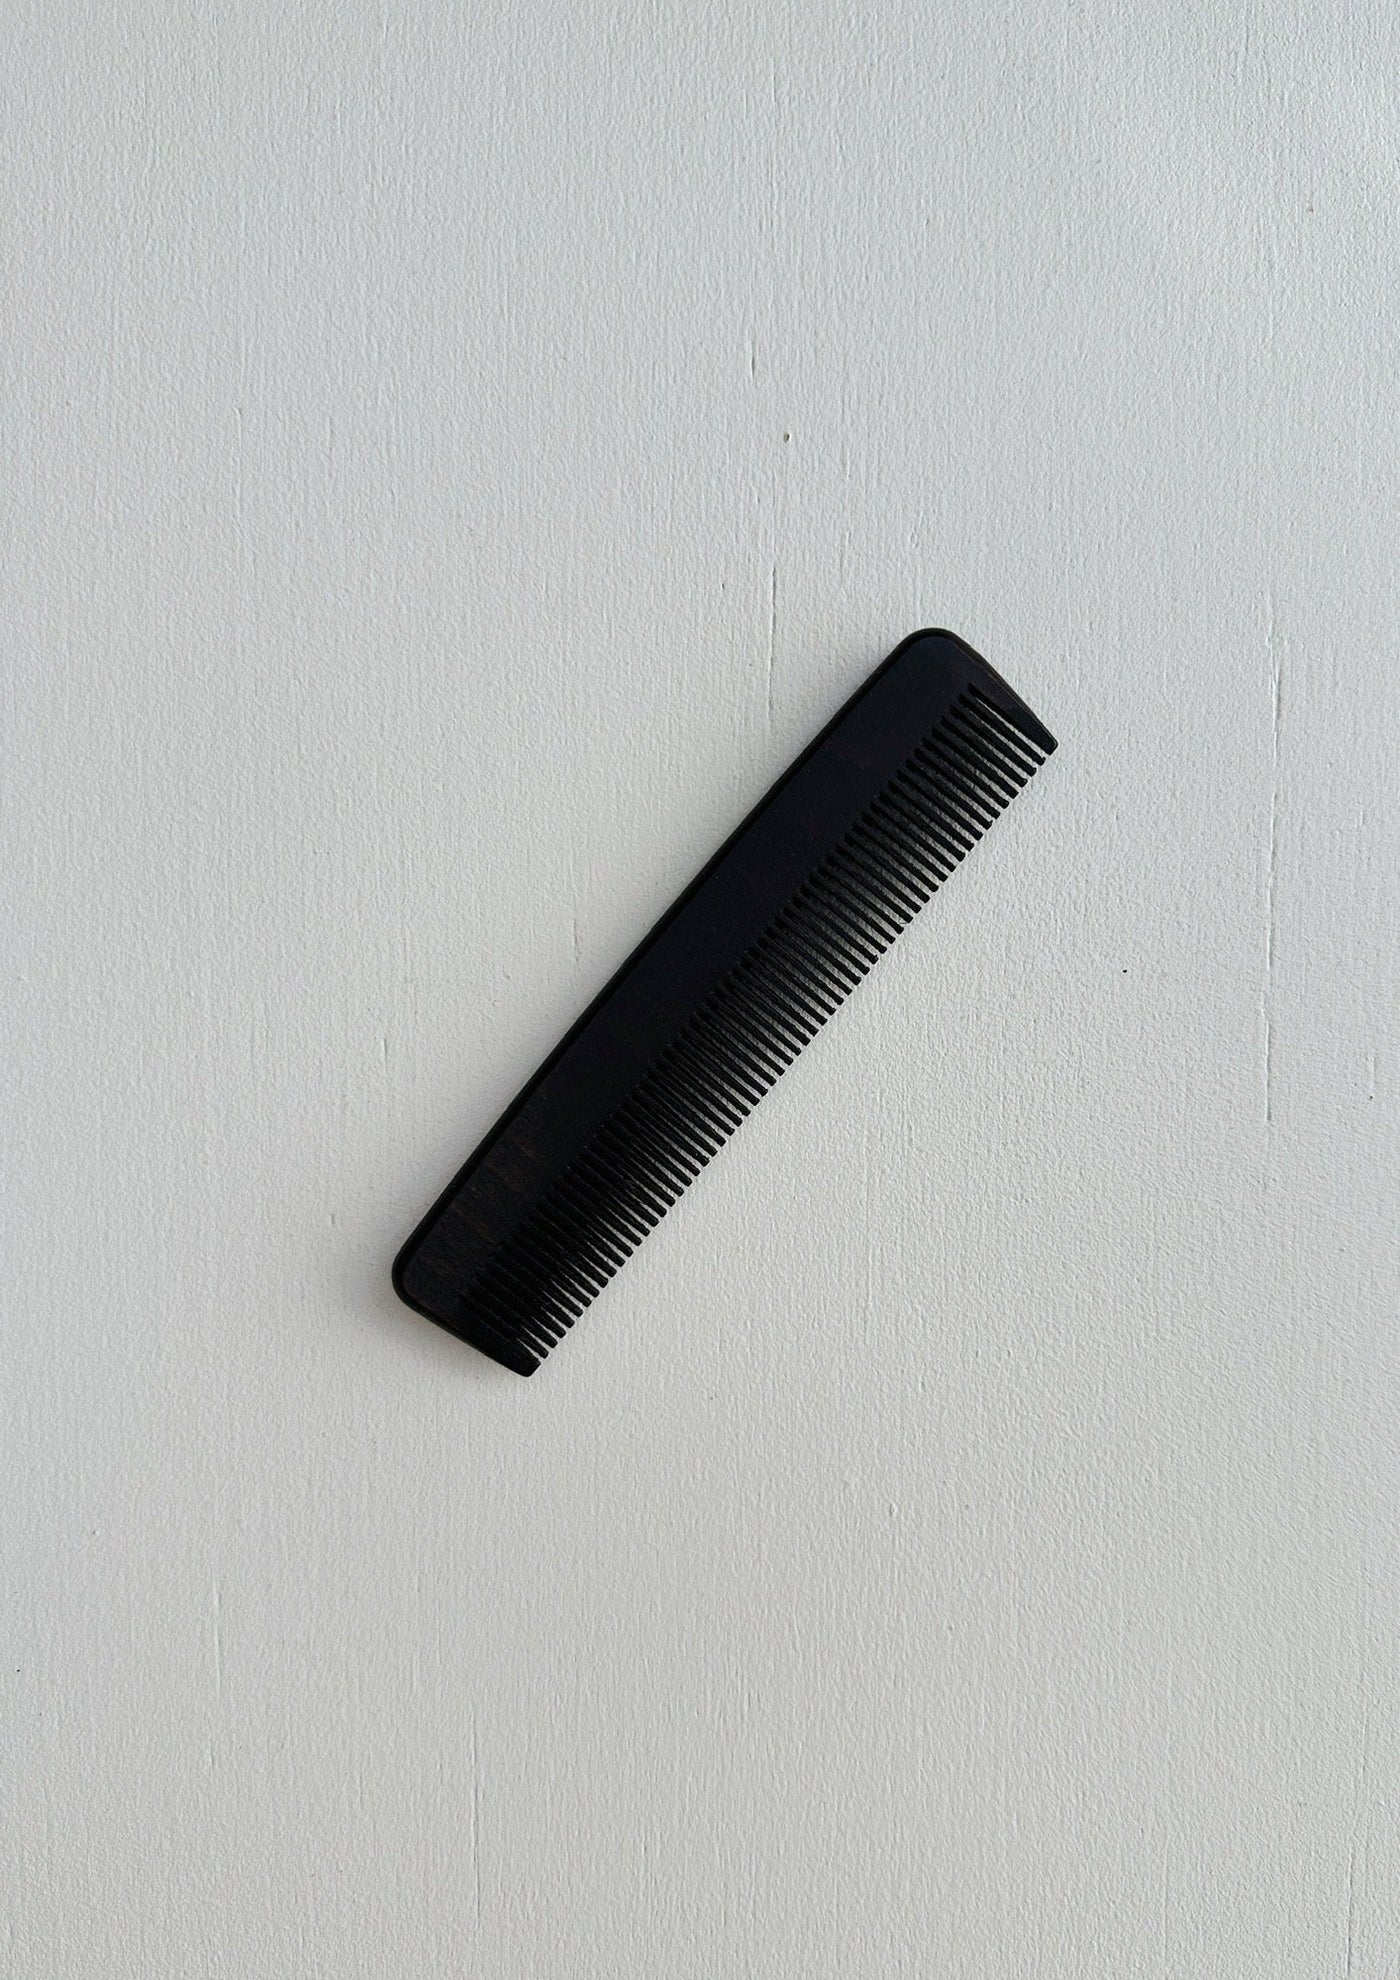 Pocket Comb - Small